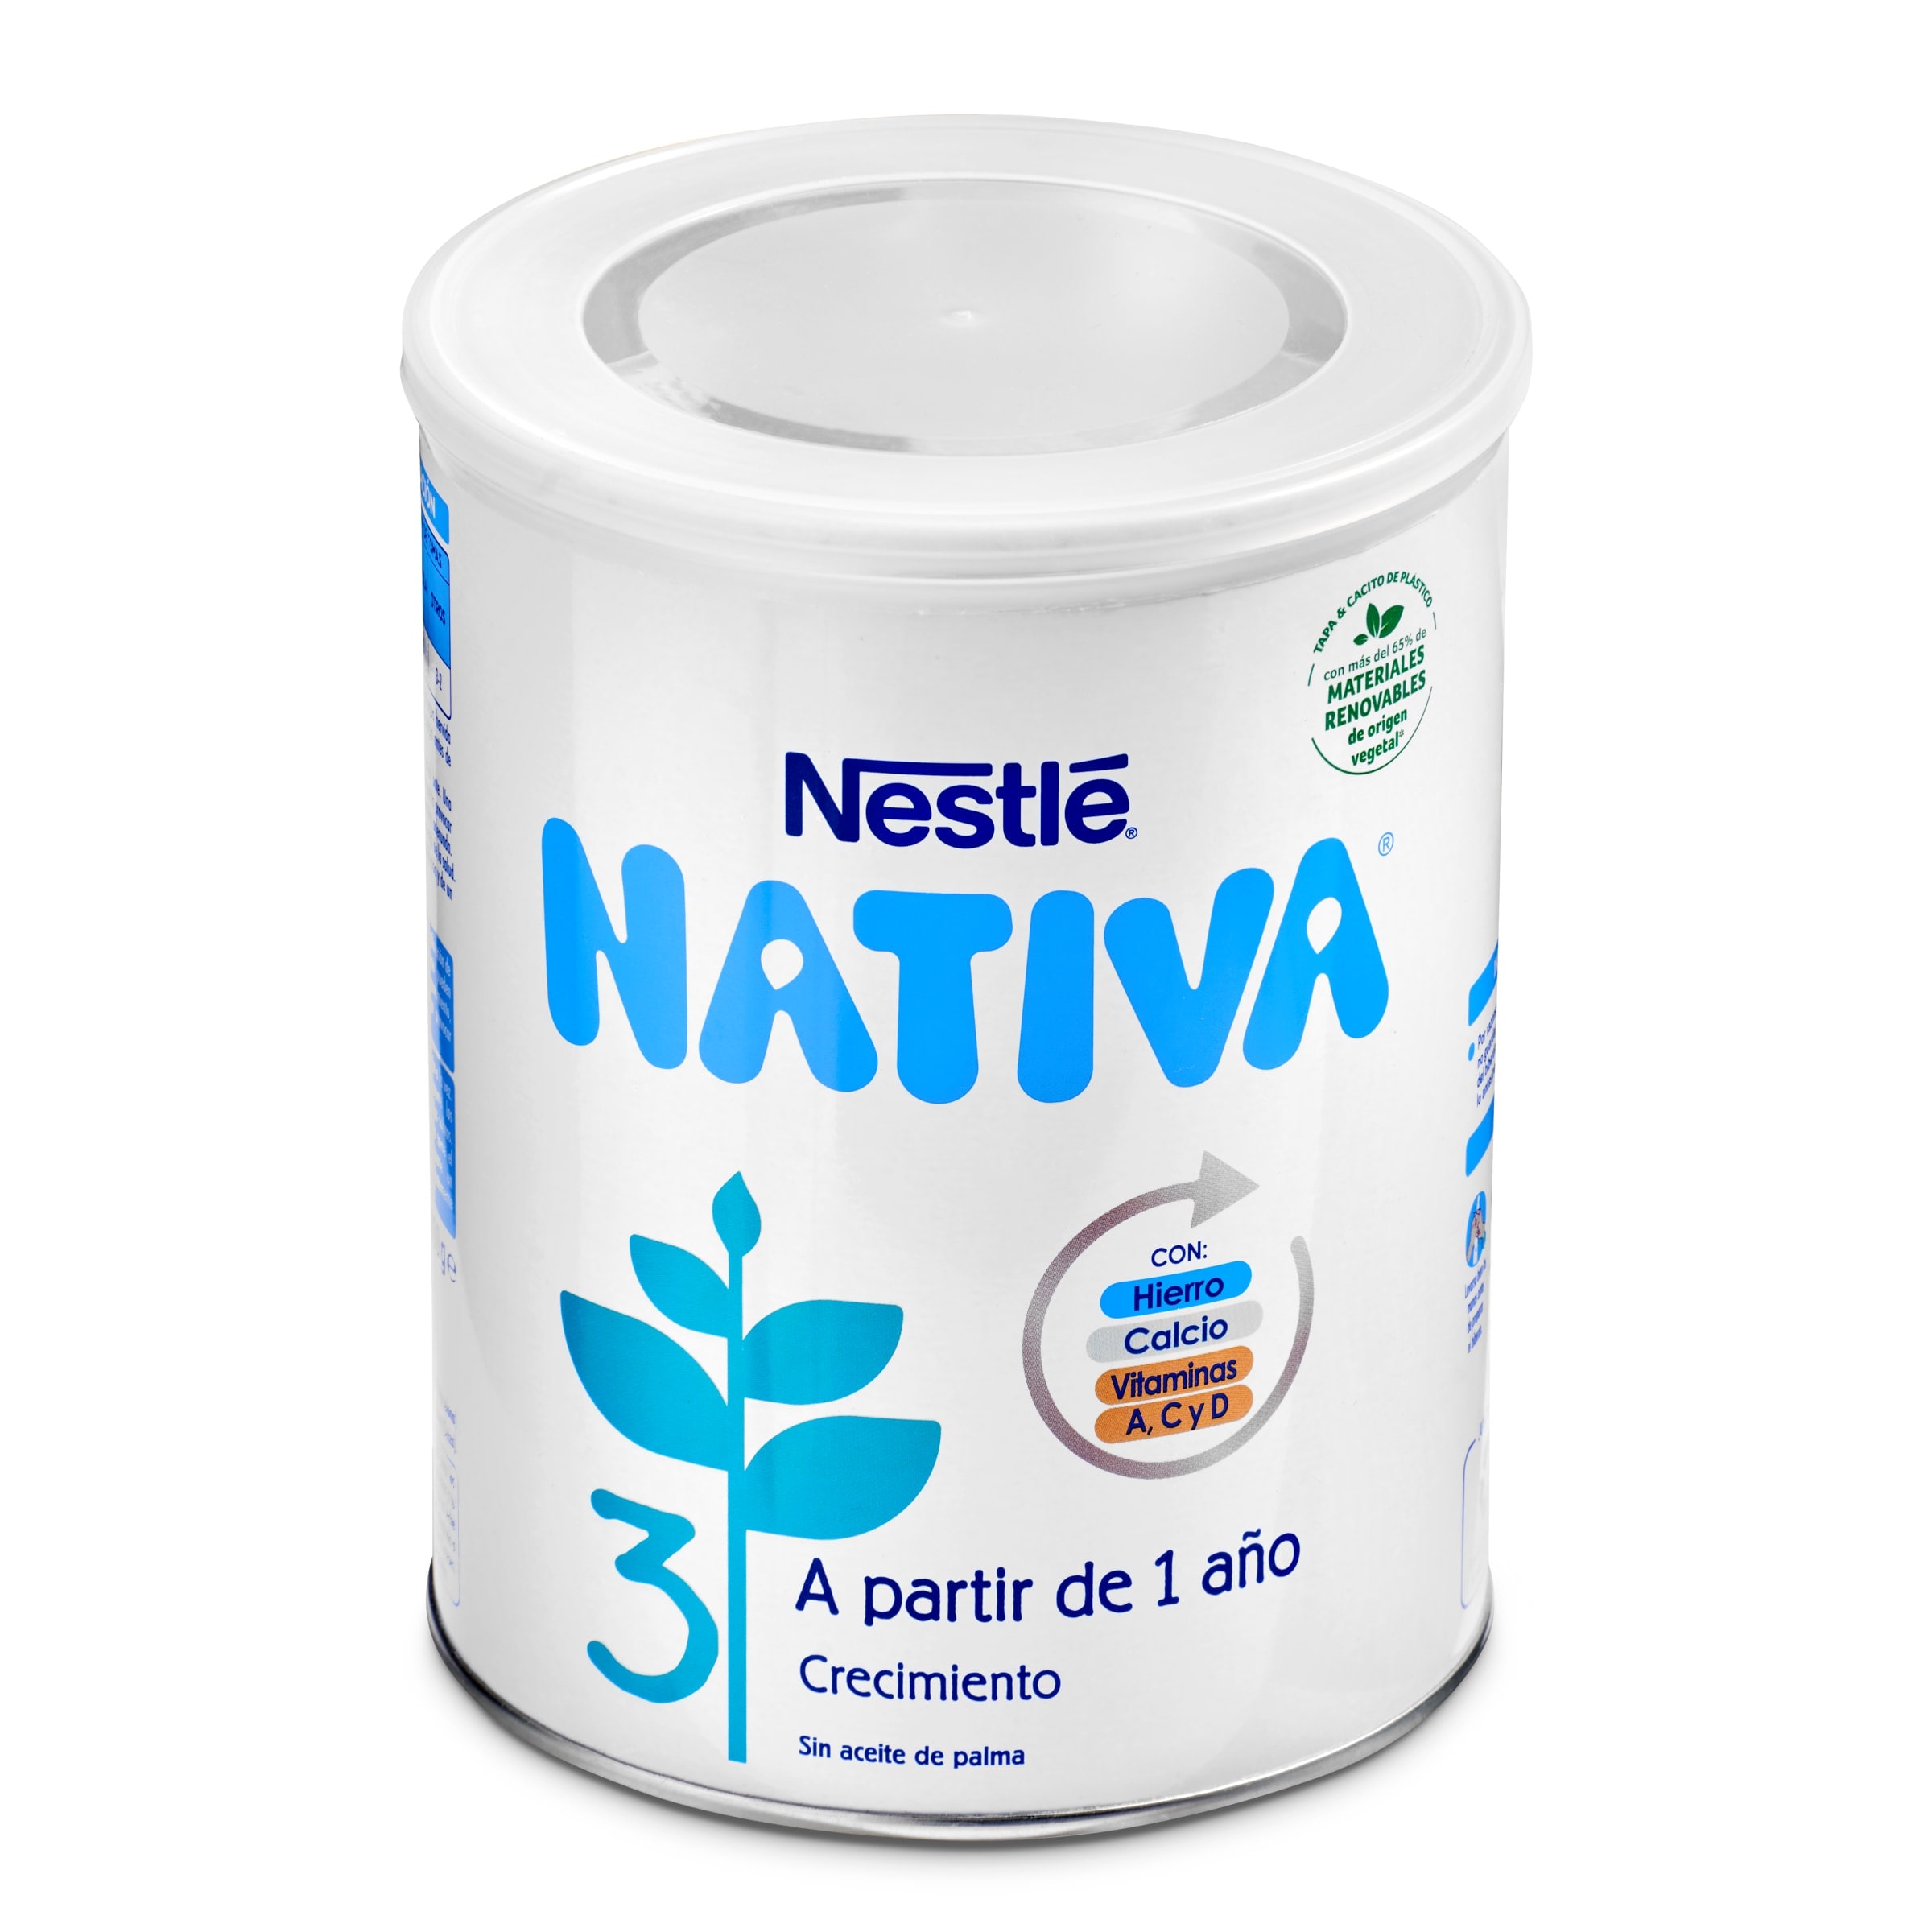 Leche de continuación Nativa brik 1 l - Supermercados DIA